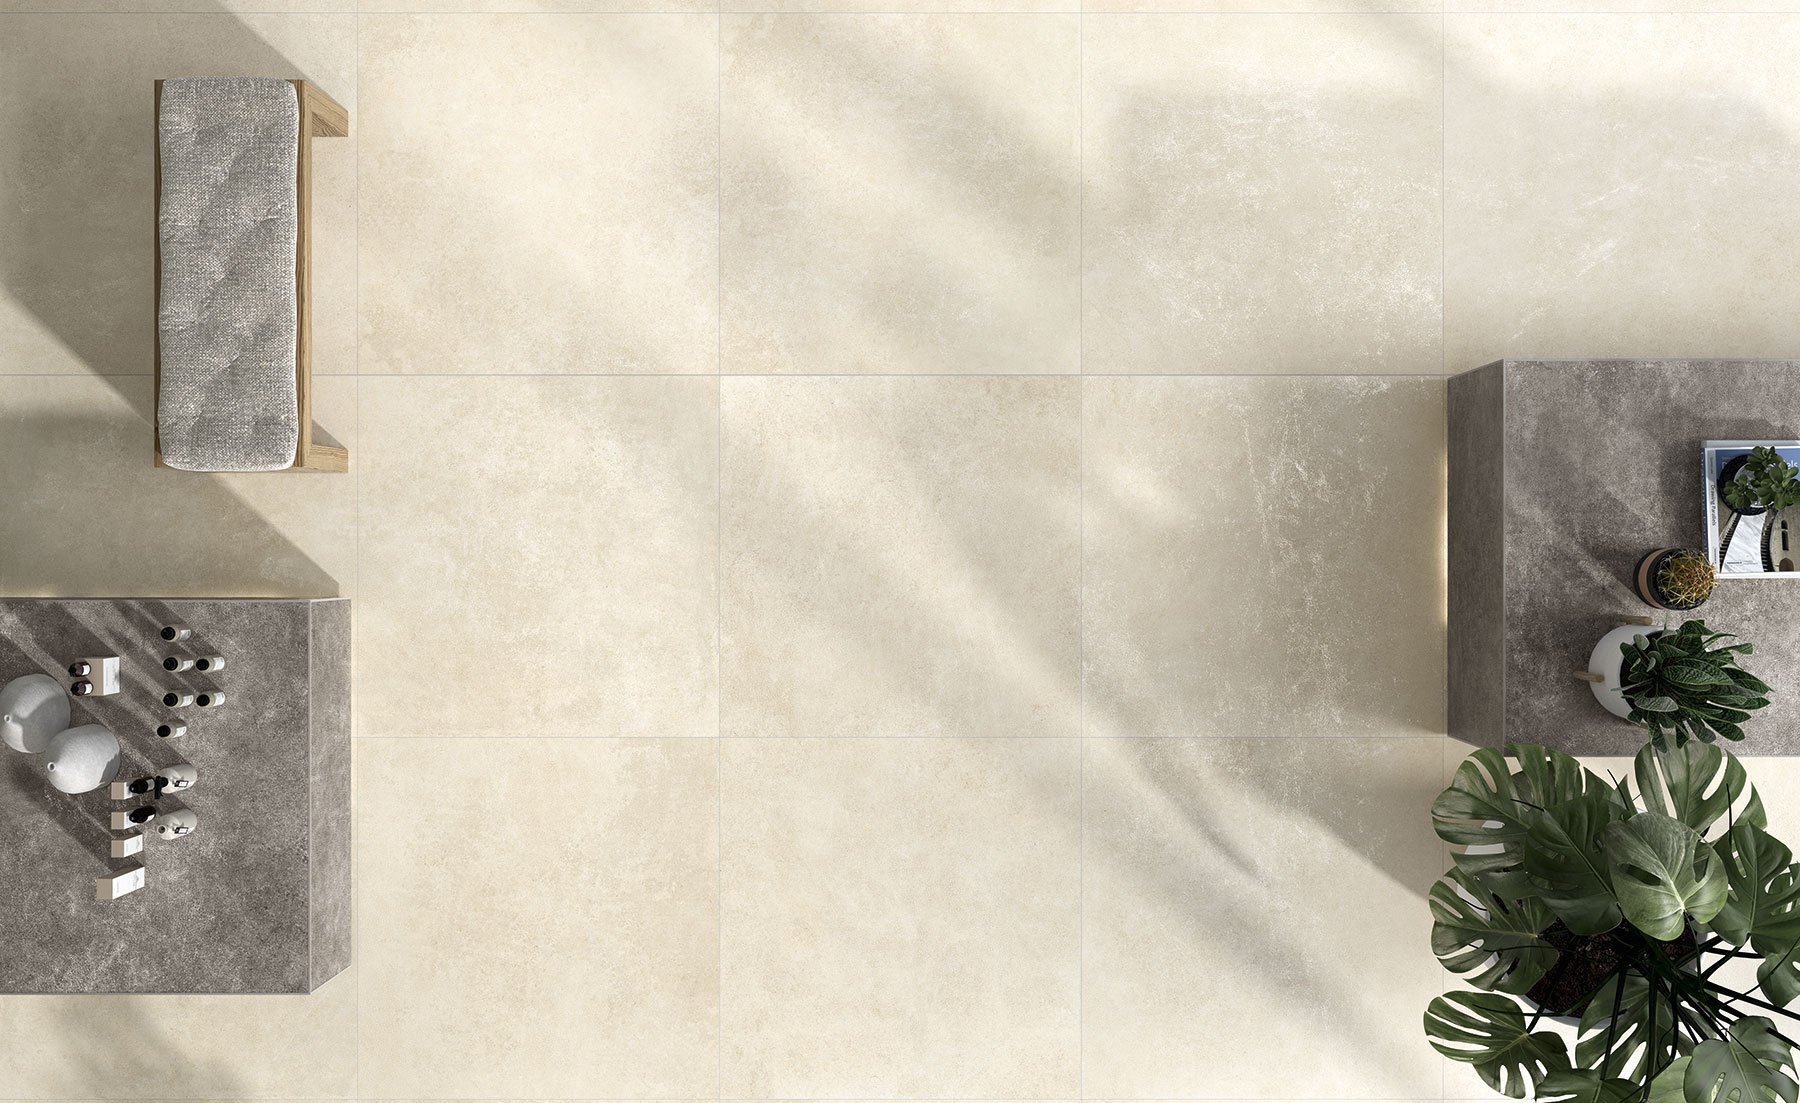 #NovaBell #Touché Cream #Obklady a dlažby #Obytné prostory #kámen #Minimalistický styl #Moderní styl #krémová #Matná dlažba #Extra velký formát #Velký formát #1000 - 1500 Kč/m2 #1500 a výše #700 - 1000 Kč/m2 #new